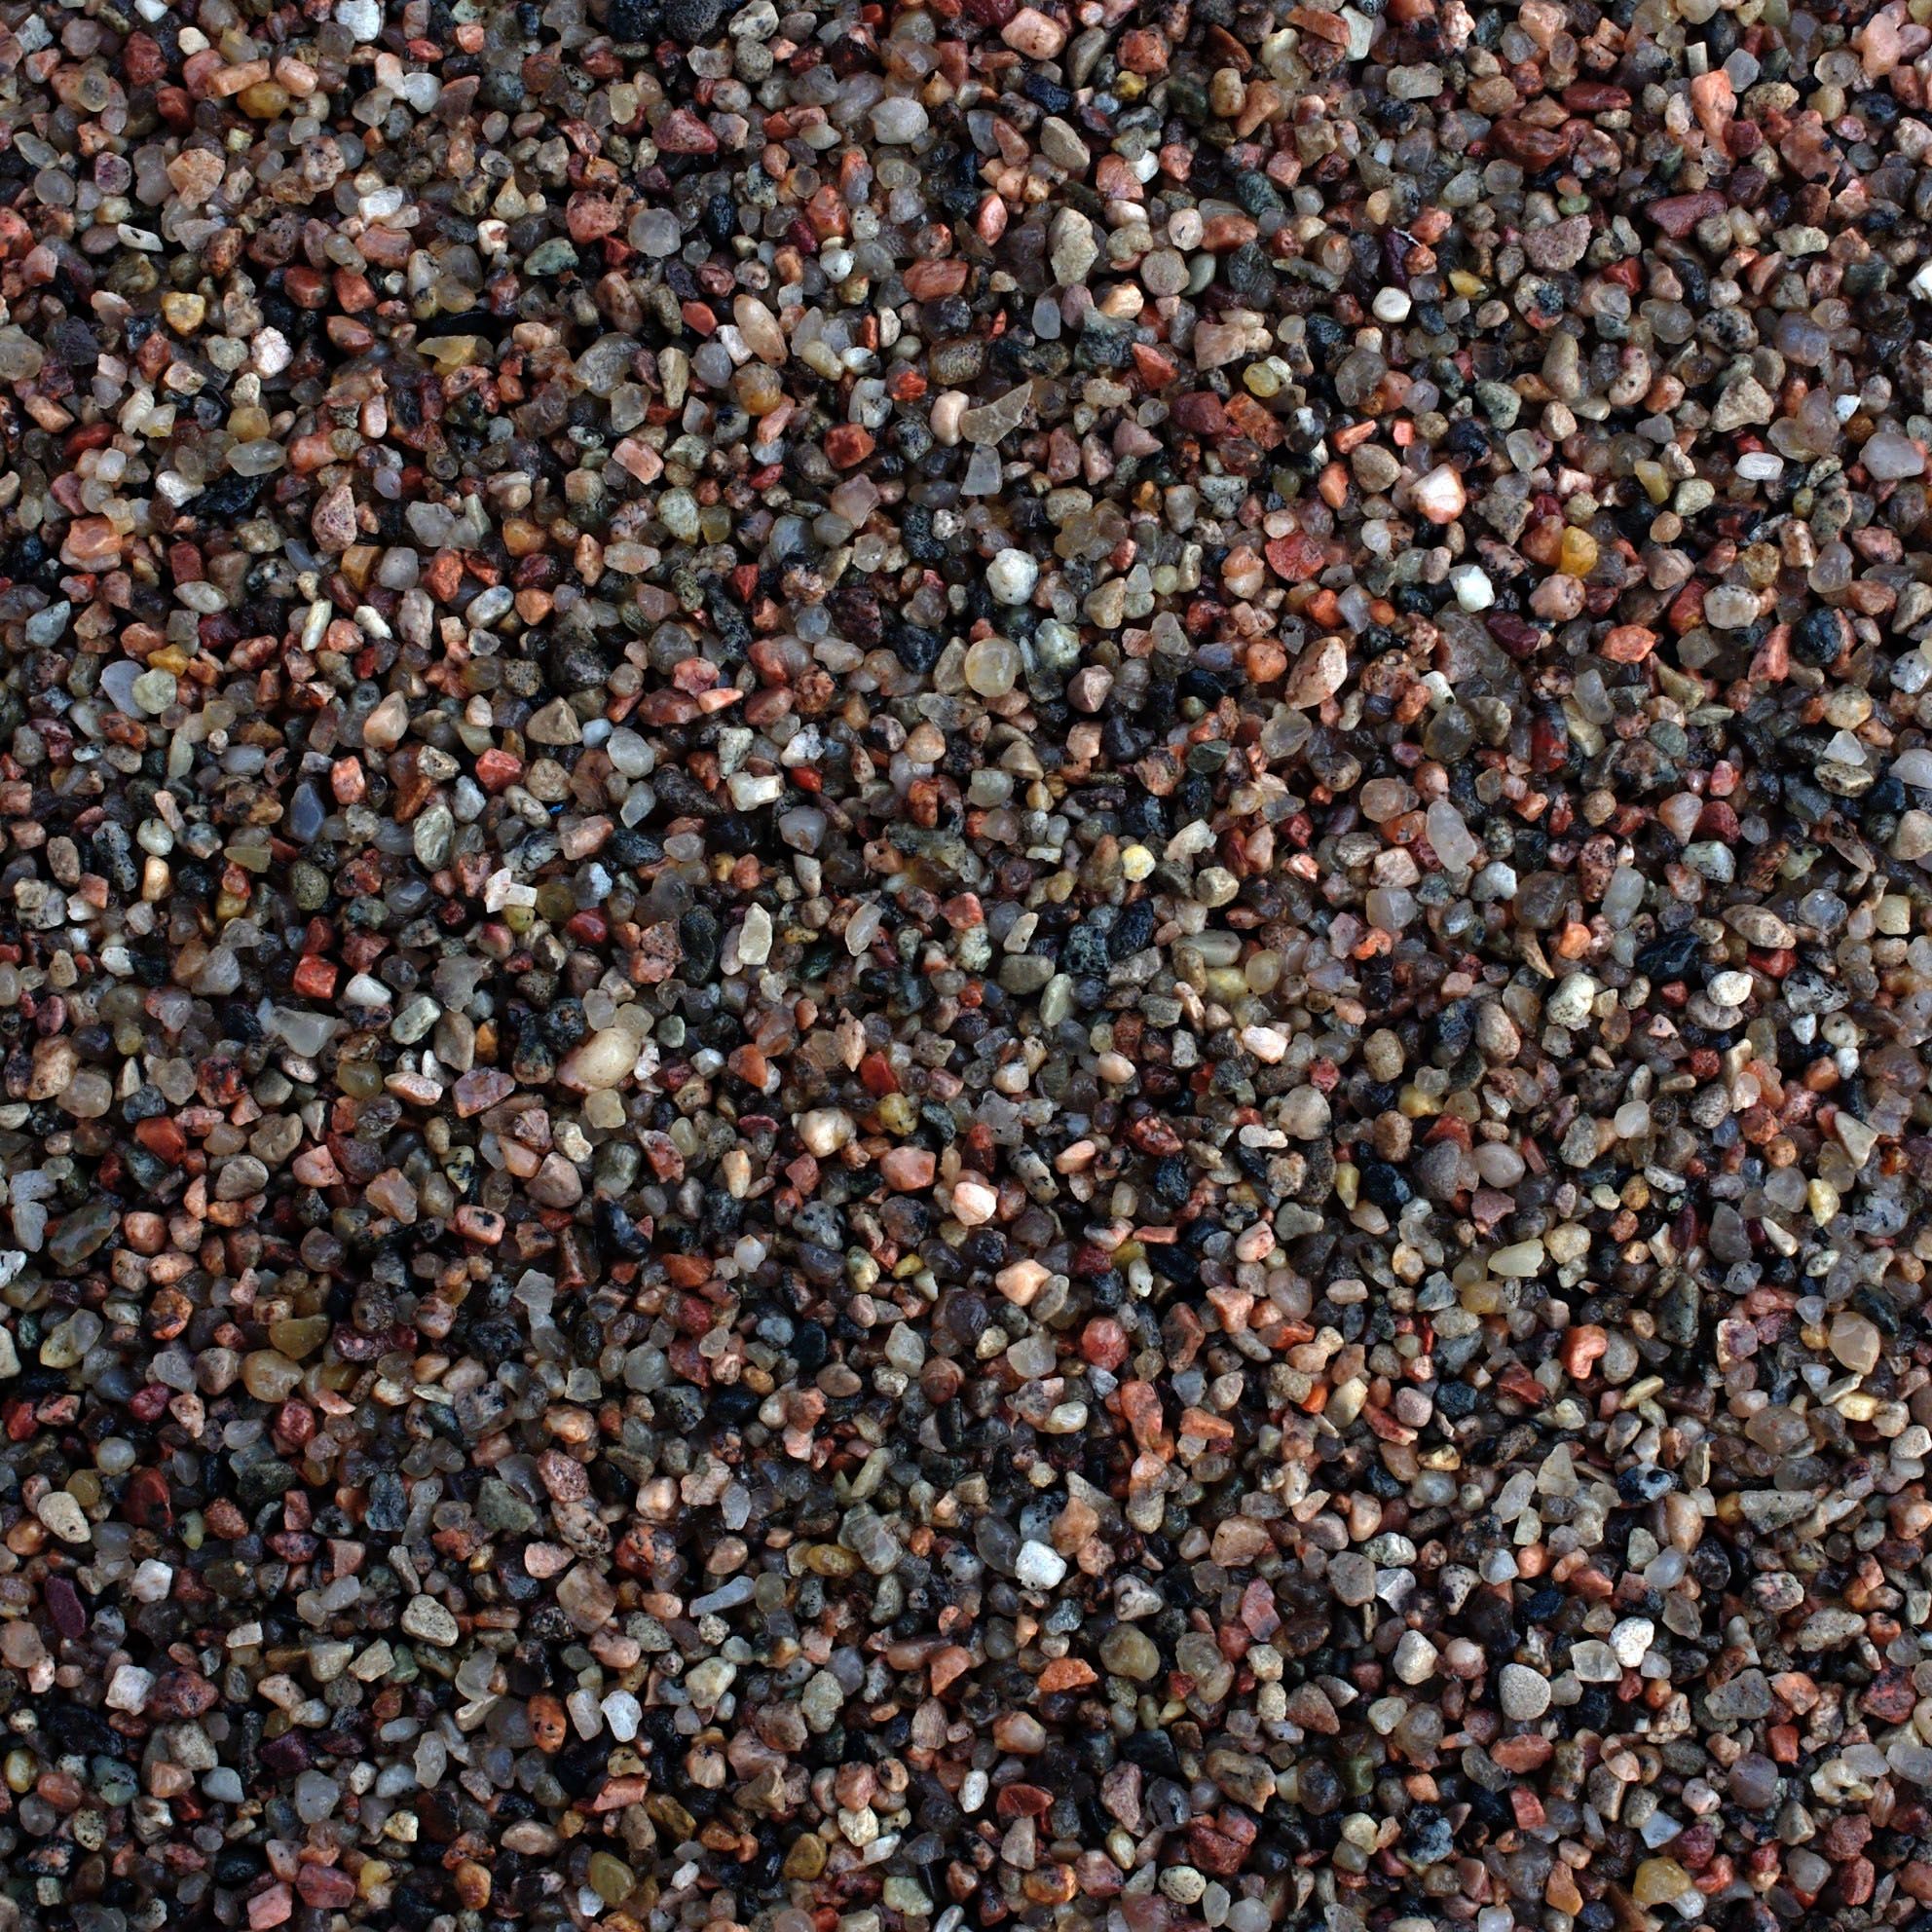 UDeco River Brown Натуральный грунт Коричневый песок для аквариумов итеррариумов, 0,6-2,5мм, 2л